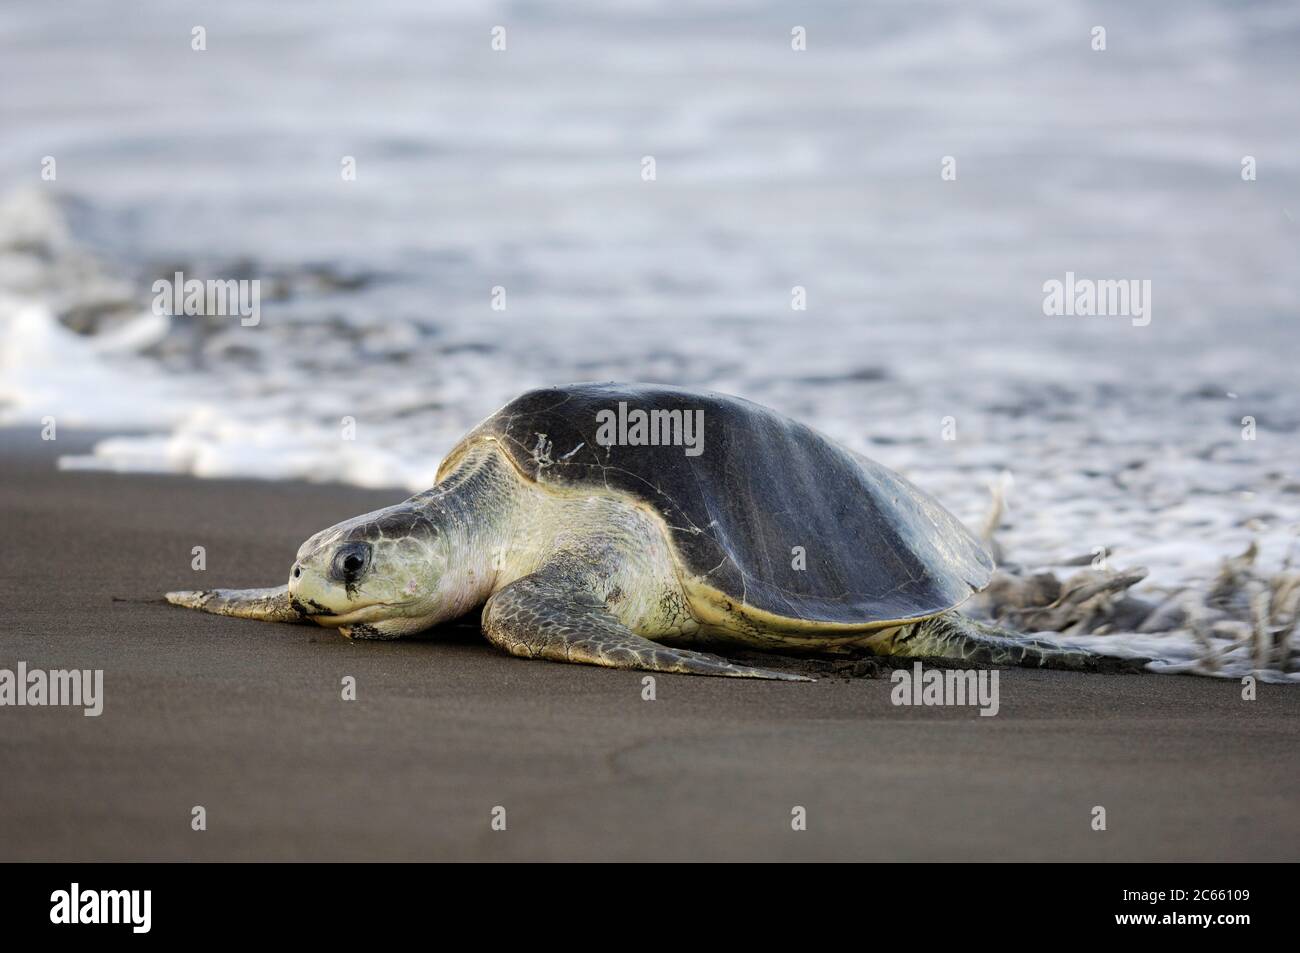 L'arrivée d'une tortue de mer de ridley (Lepidochelys olivacea) à la plage d'Ostional, Costa Rica, côte Pacifique, peut être le début d'une arribada (ponte de masse) des tortues de mer. Des milliers et des milliers de reptiles de 50 kilogrammes viennent à terre sur une période allant jusqu'à une semaine, seulement interrompue par le soleil de midi le plus chaud, pour enterrer leurs œufs dans le sable chaud. Banque D'Images